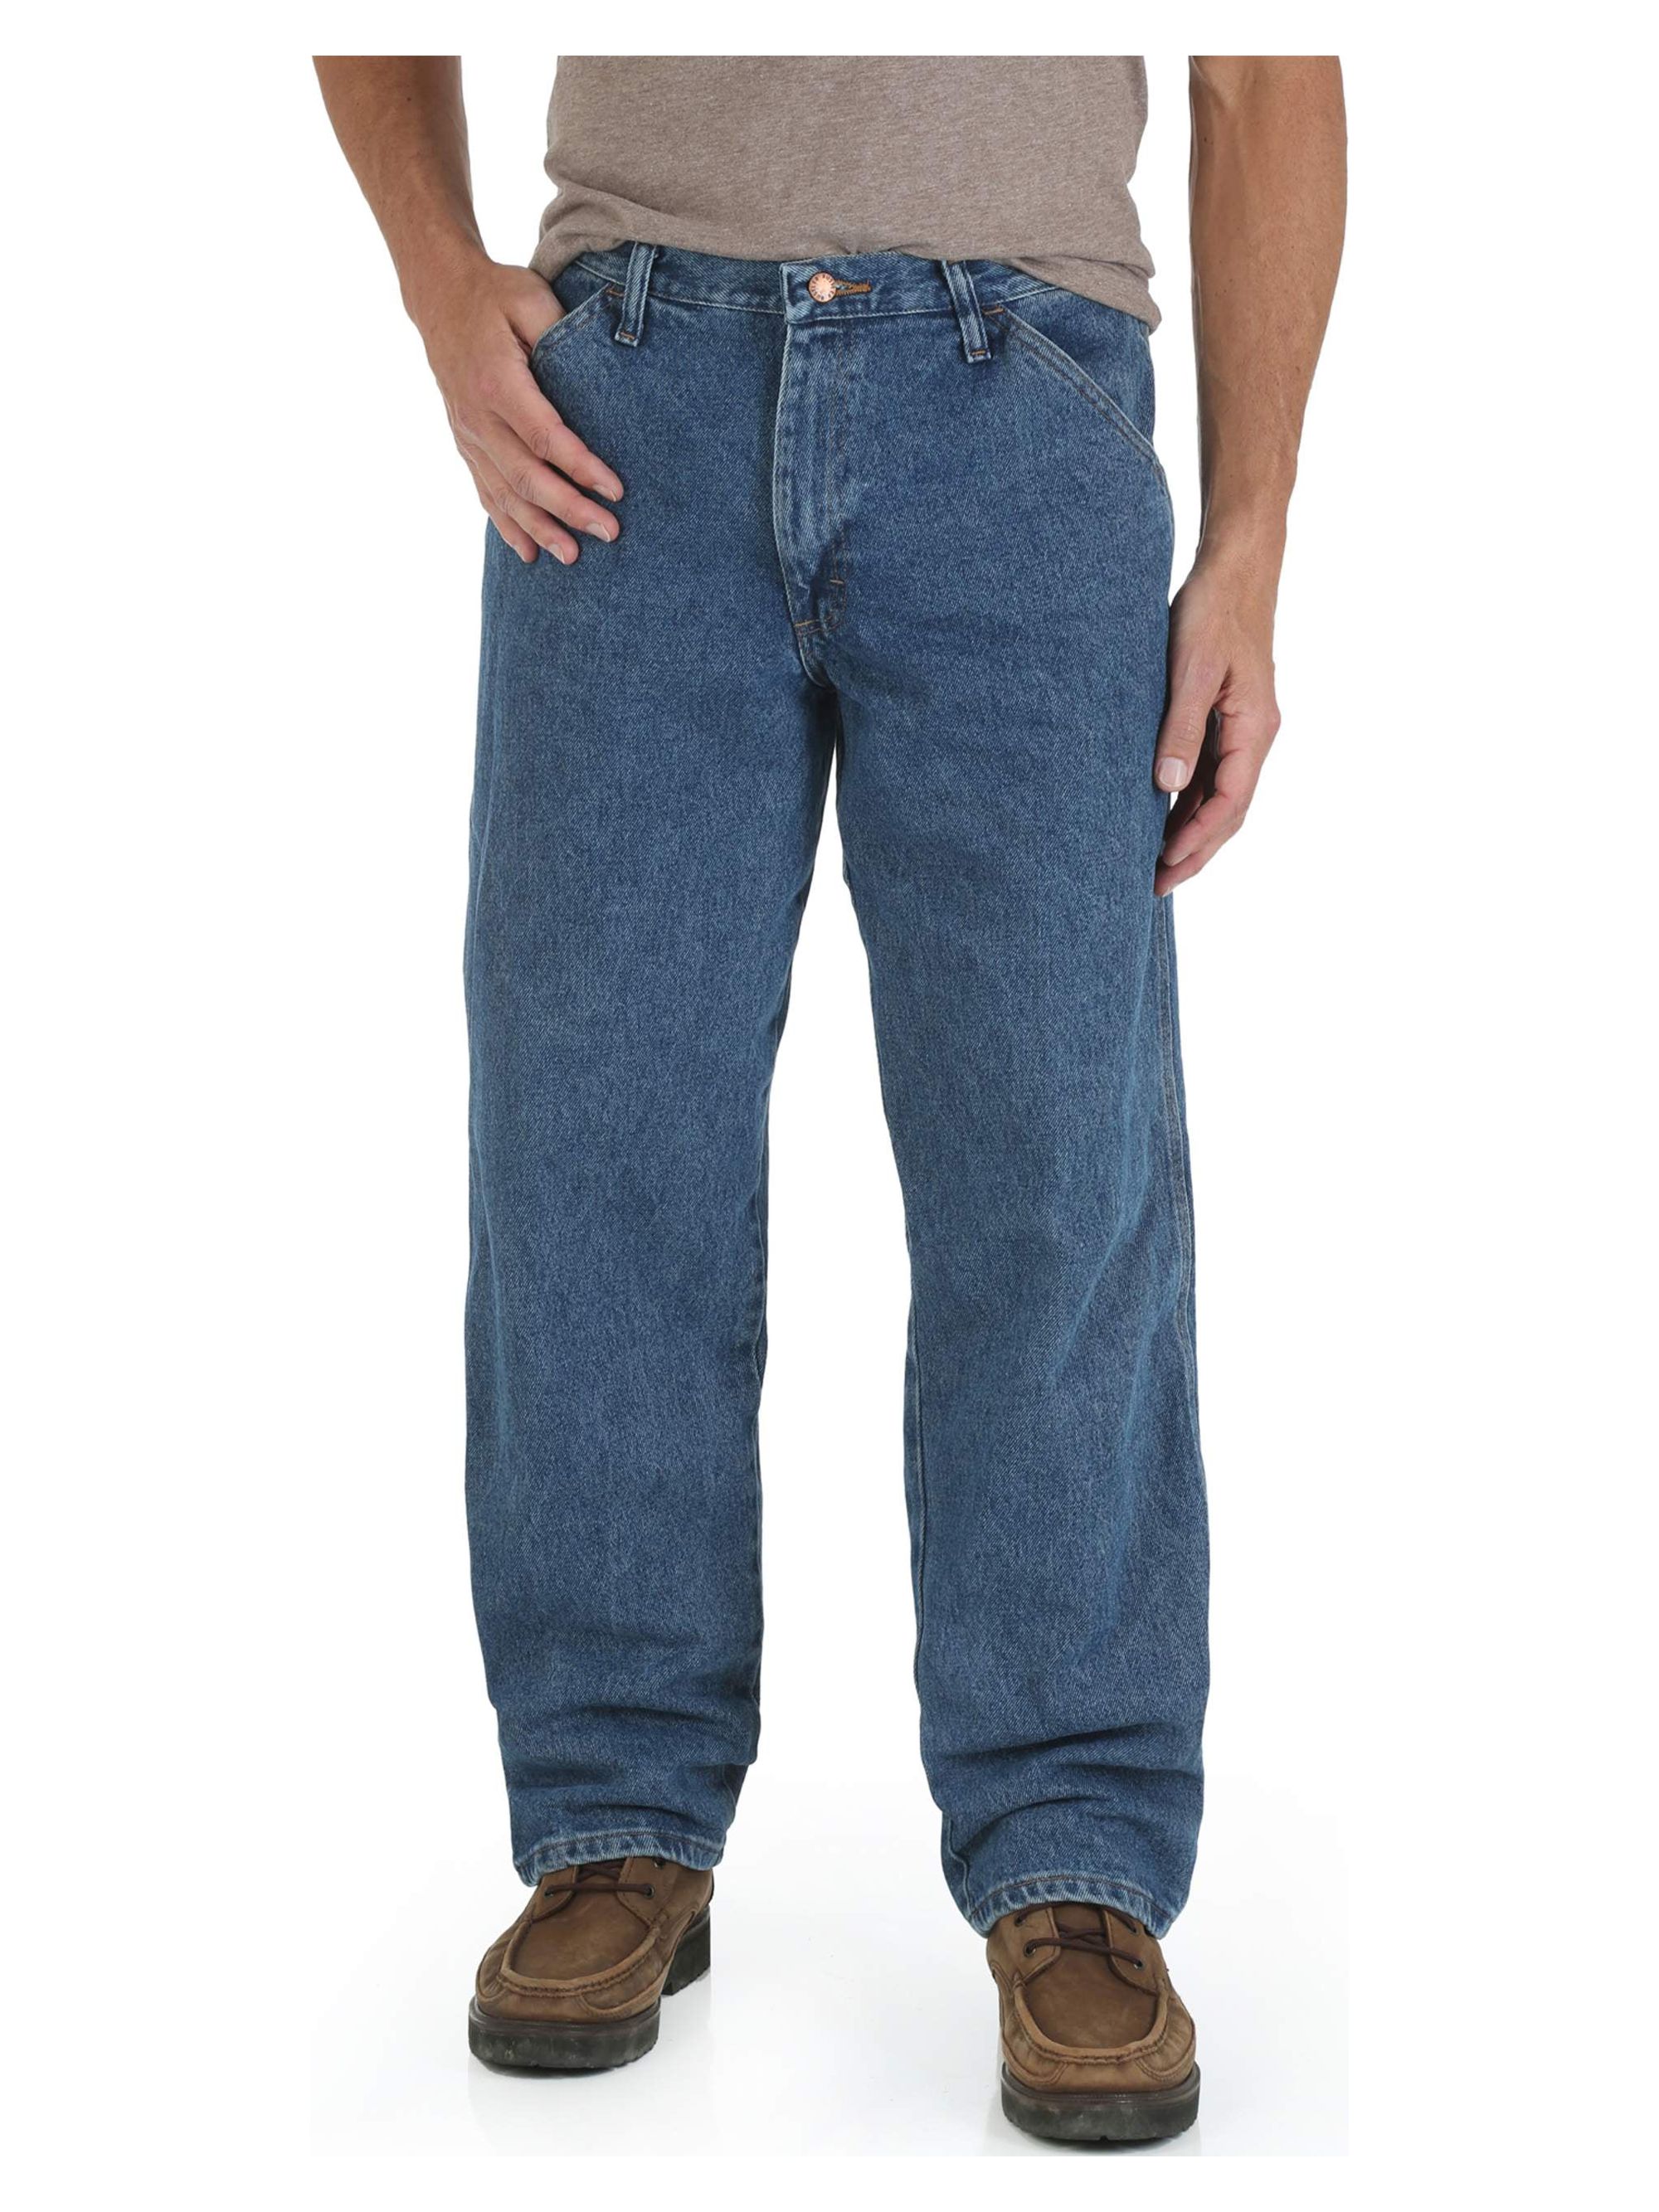 Wrangler Rustler Men's and Big Men's Straight Leg Carpenter Jeans - image 1 of 5